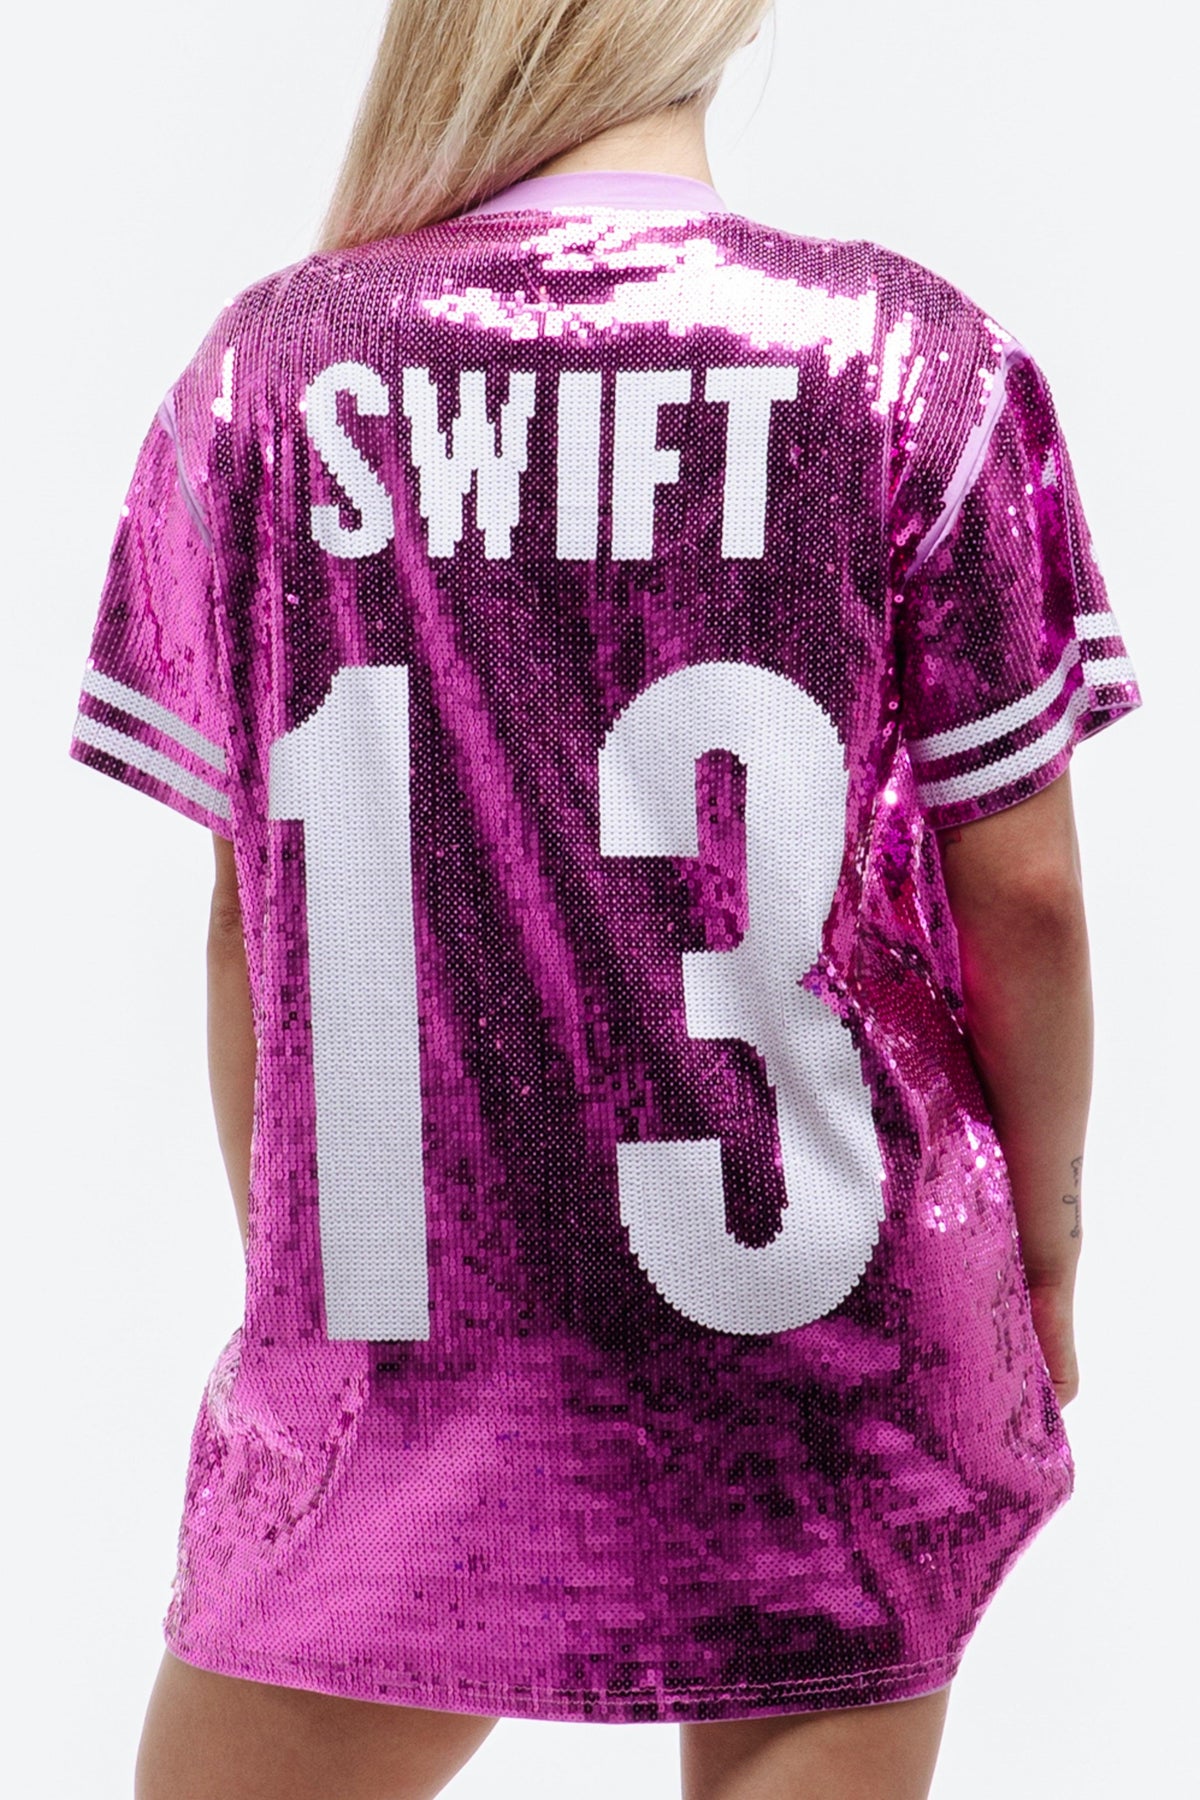 SWIFT Eras Tour Dress - Pink - SEQUIN FANS